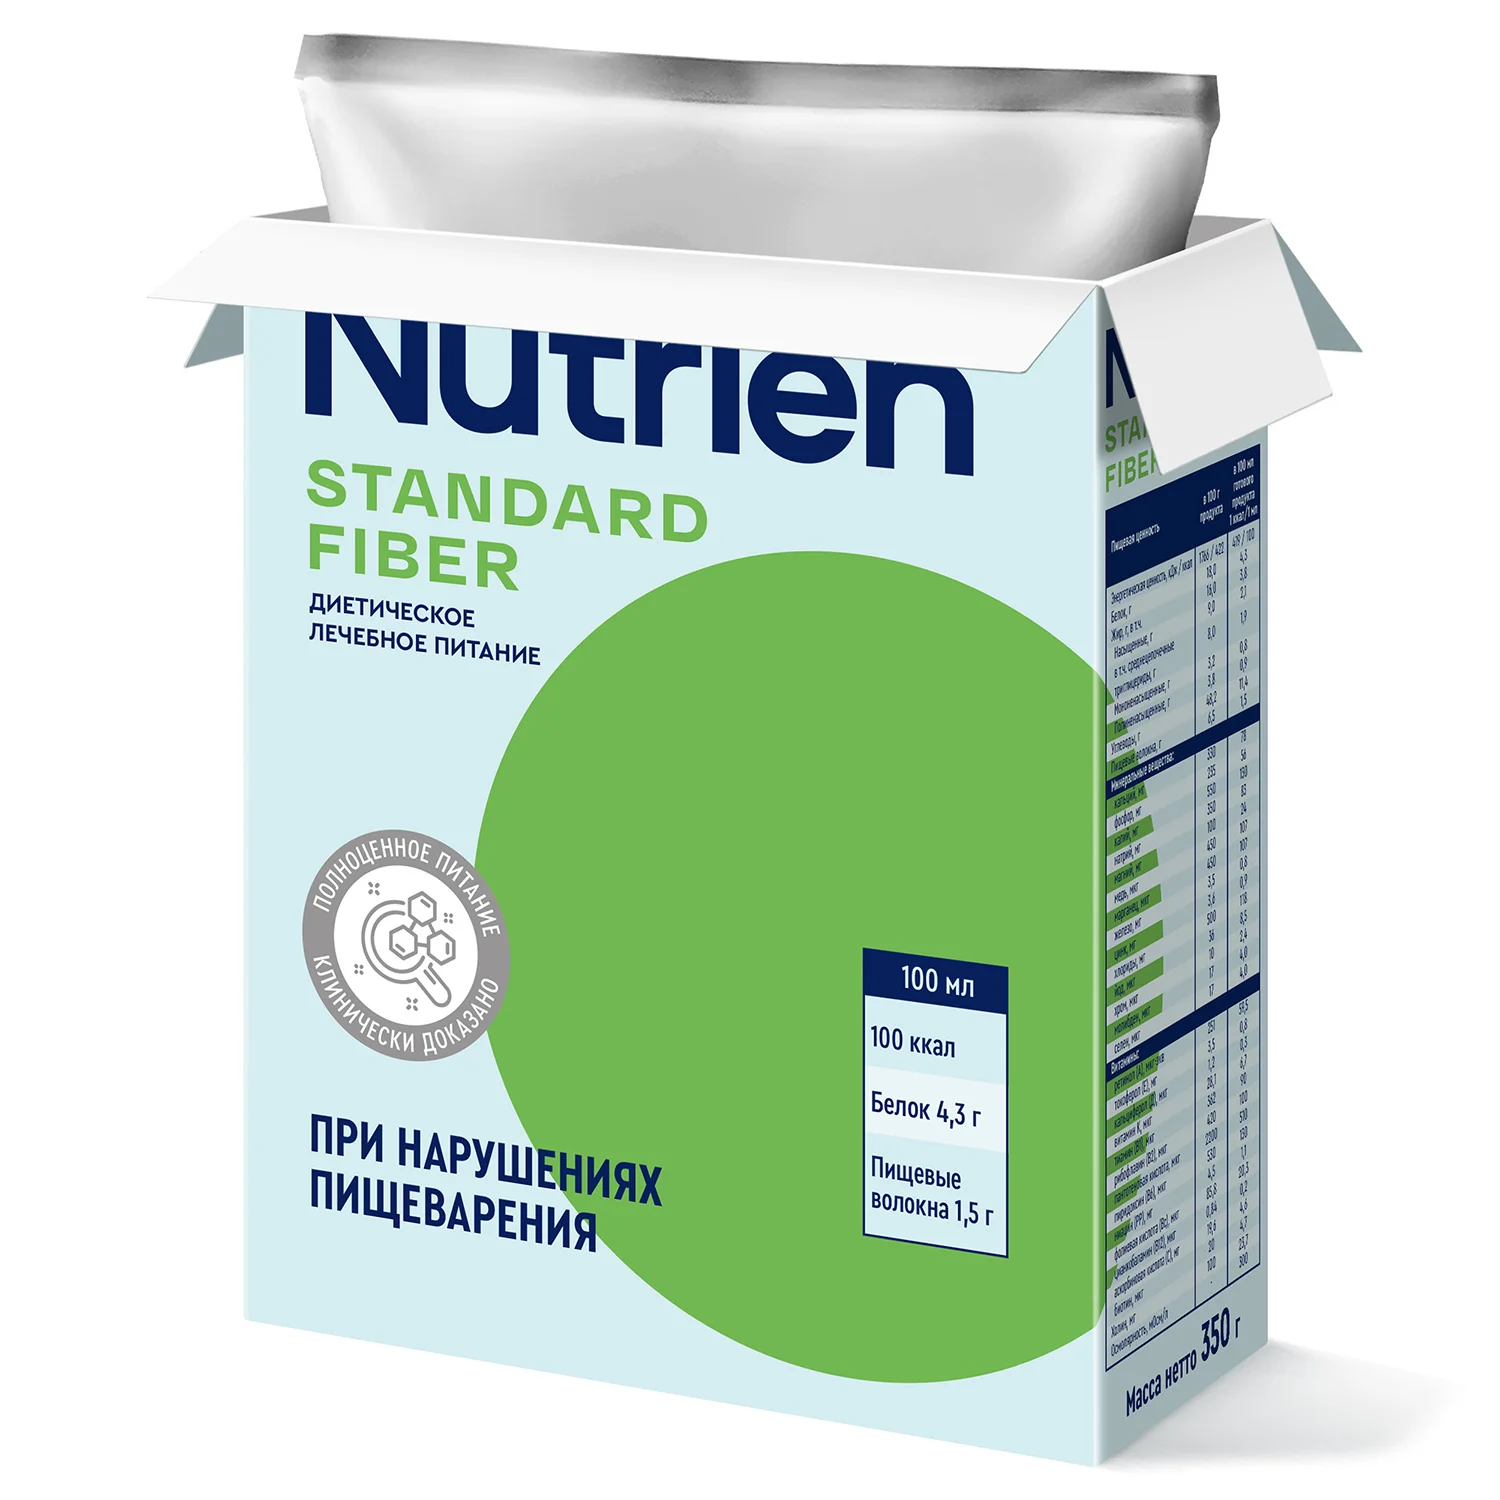 Nutrien Standard Fiber - 7